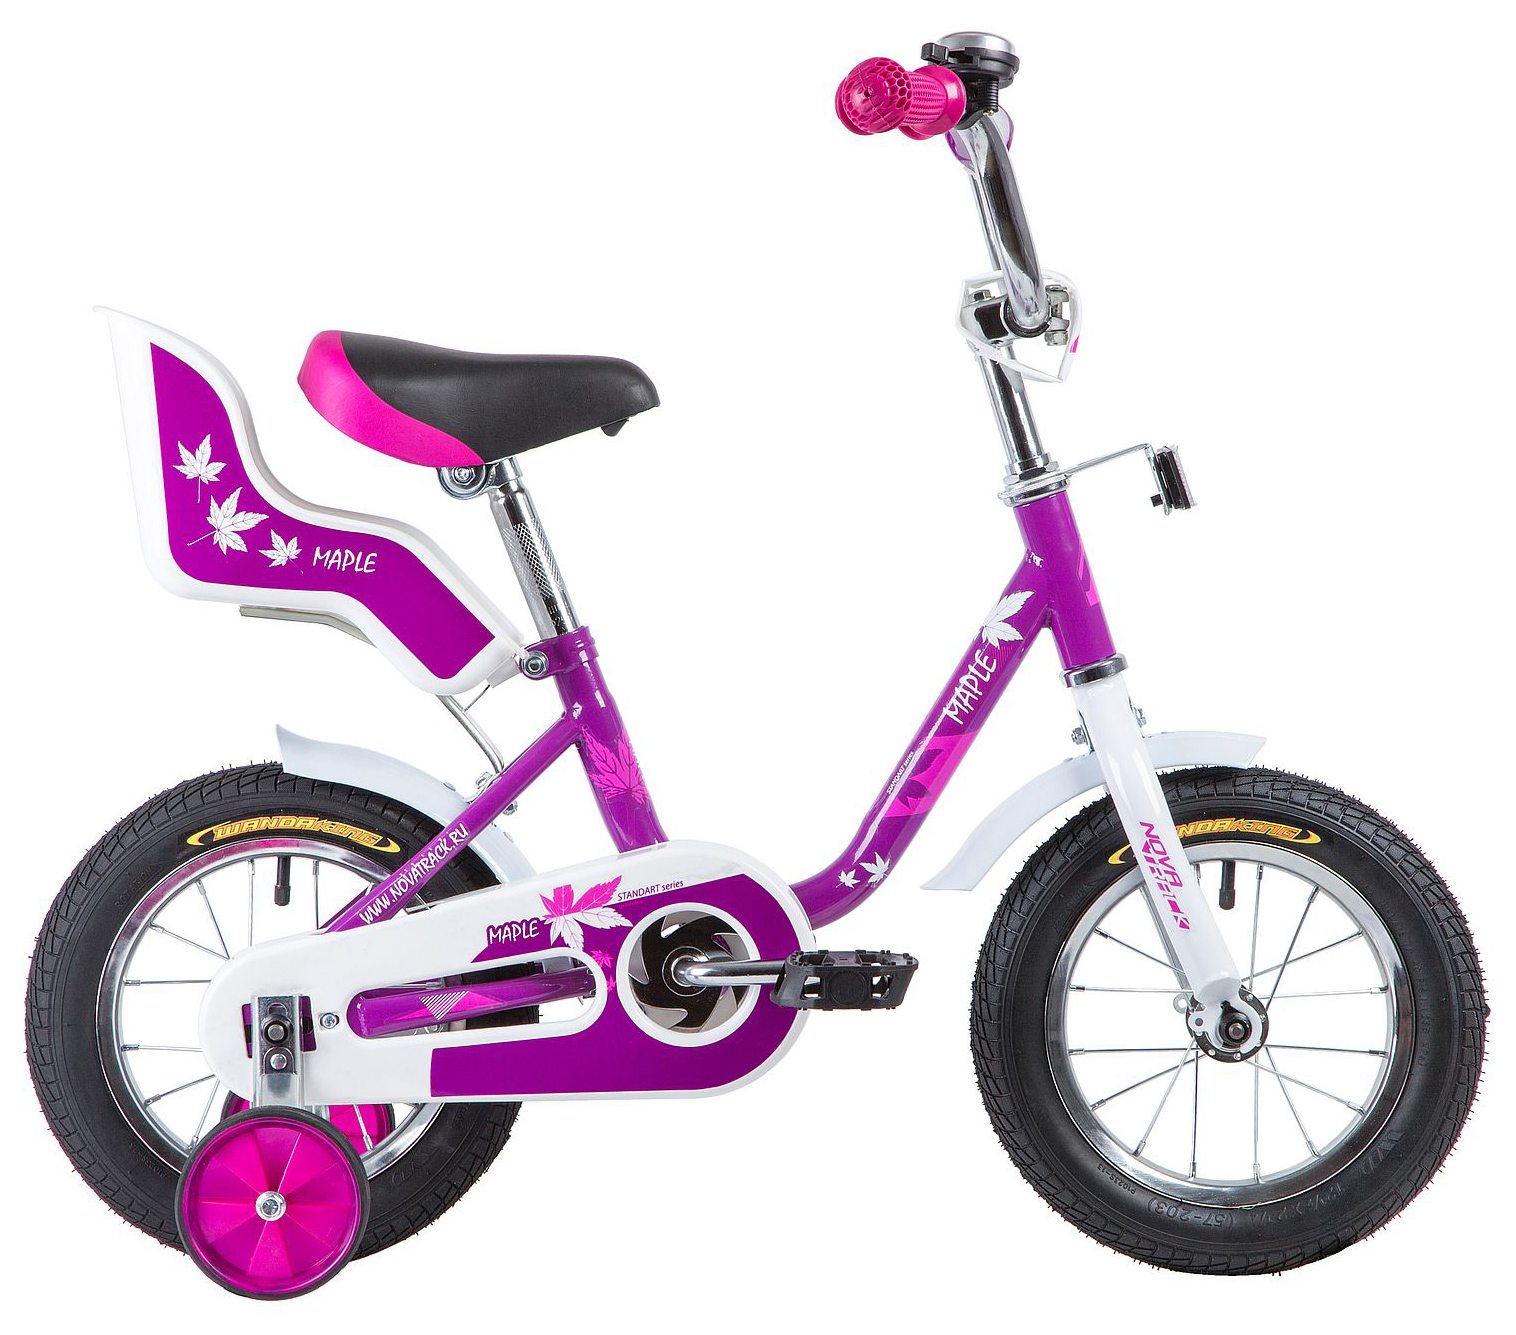  Отзывы о Детском велосипеде Novatrack Maple 12 2021